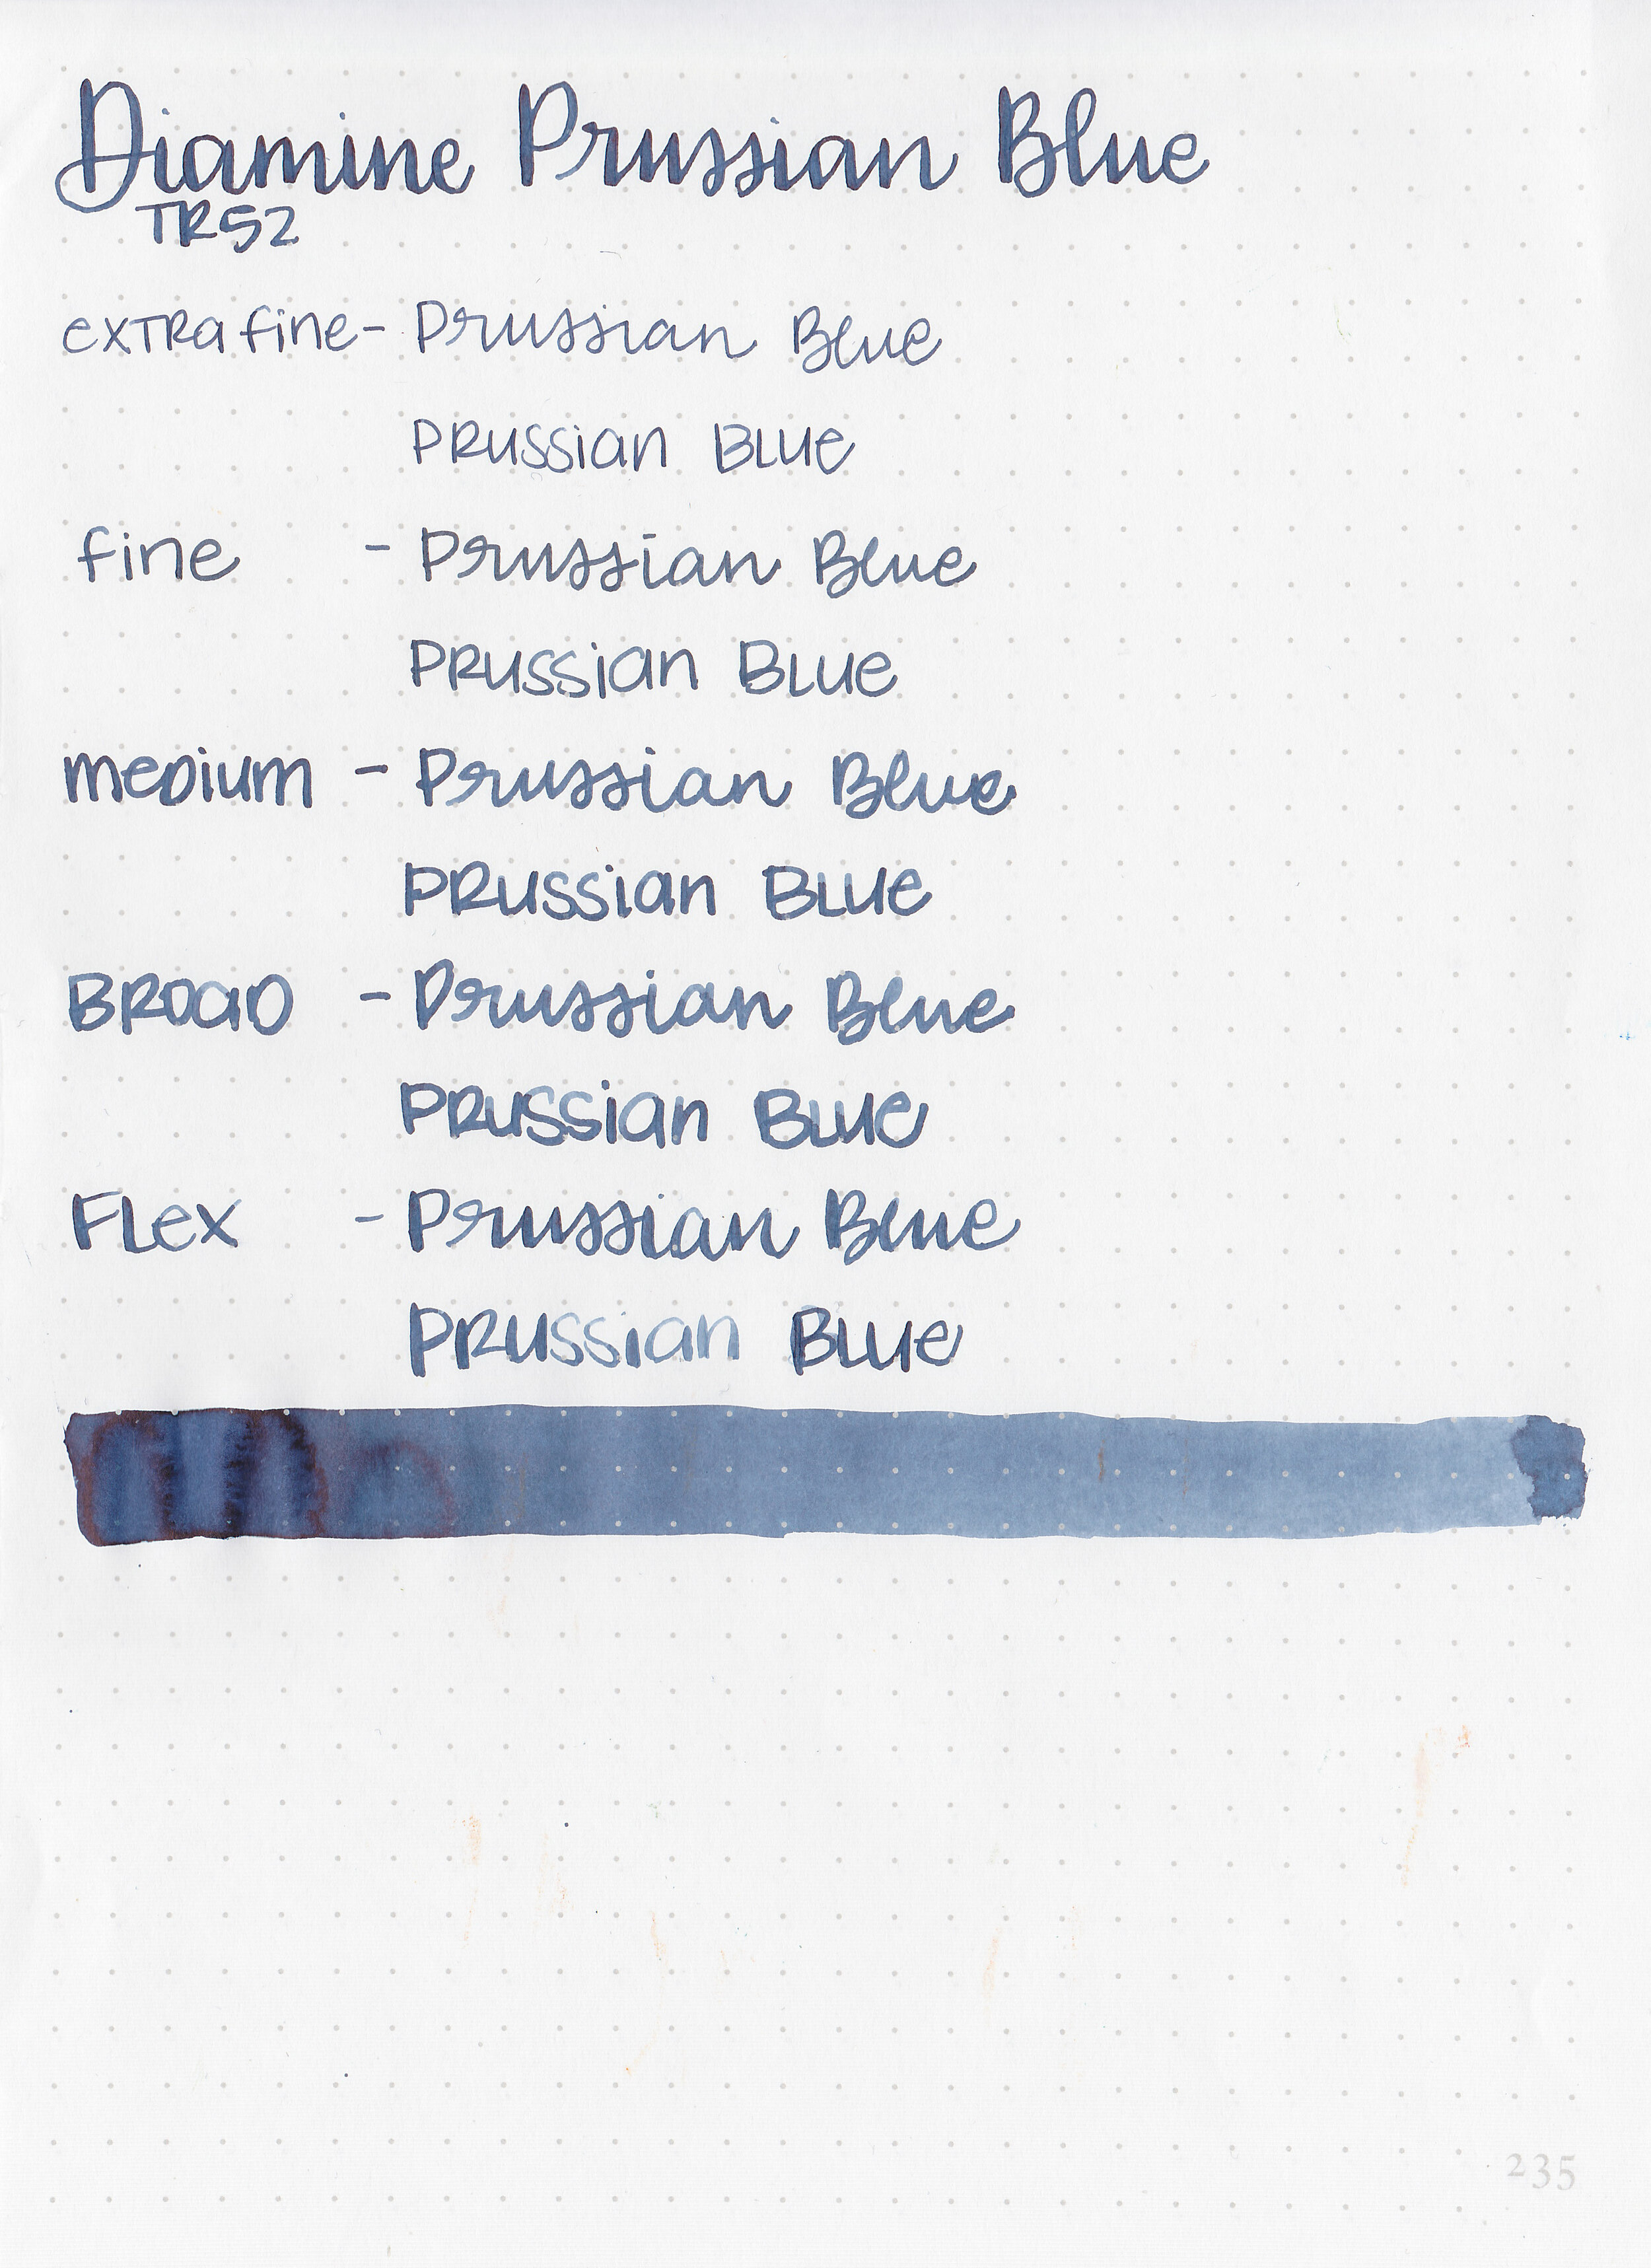 d-prussian-blue-9.jpg